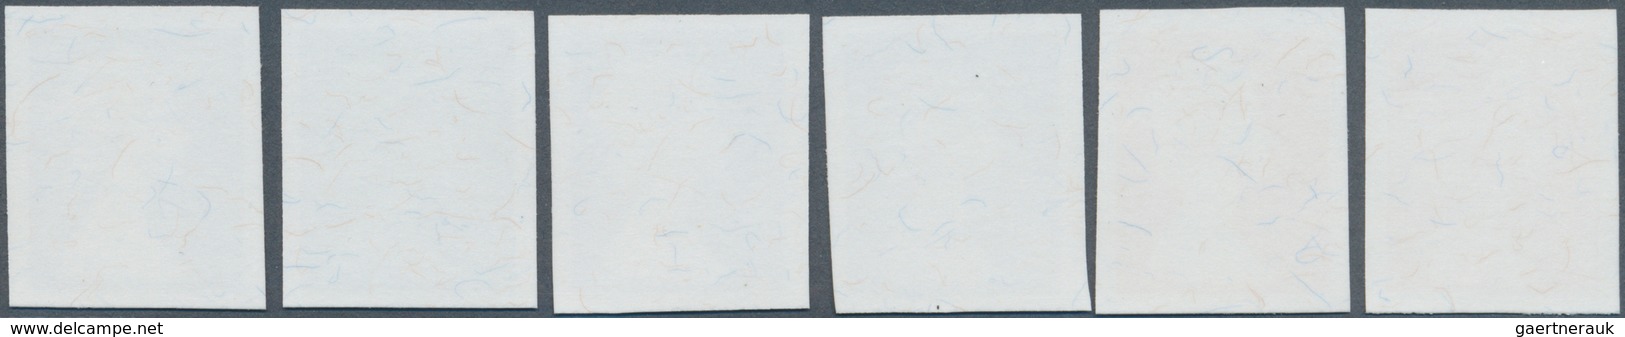 Großbritannien - Machin: 1997, Imperforate Proof In Issued Design Without Value On Gummed Paper, Six - Machin-Ausgaben